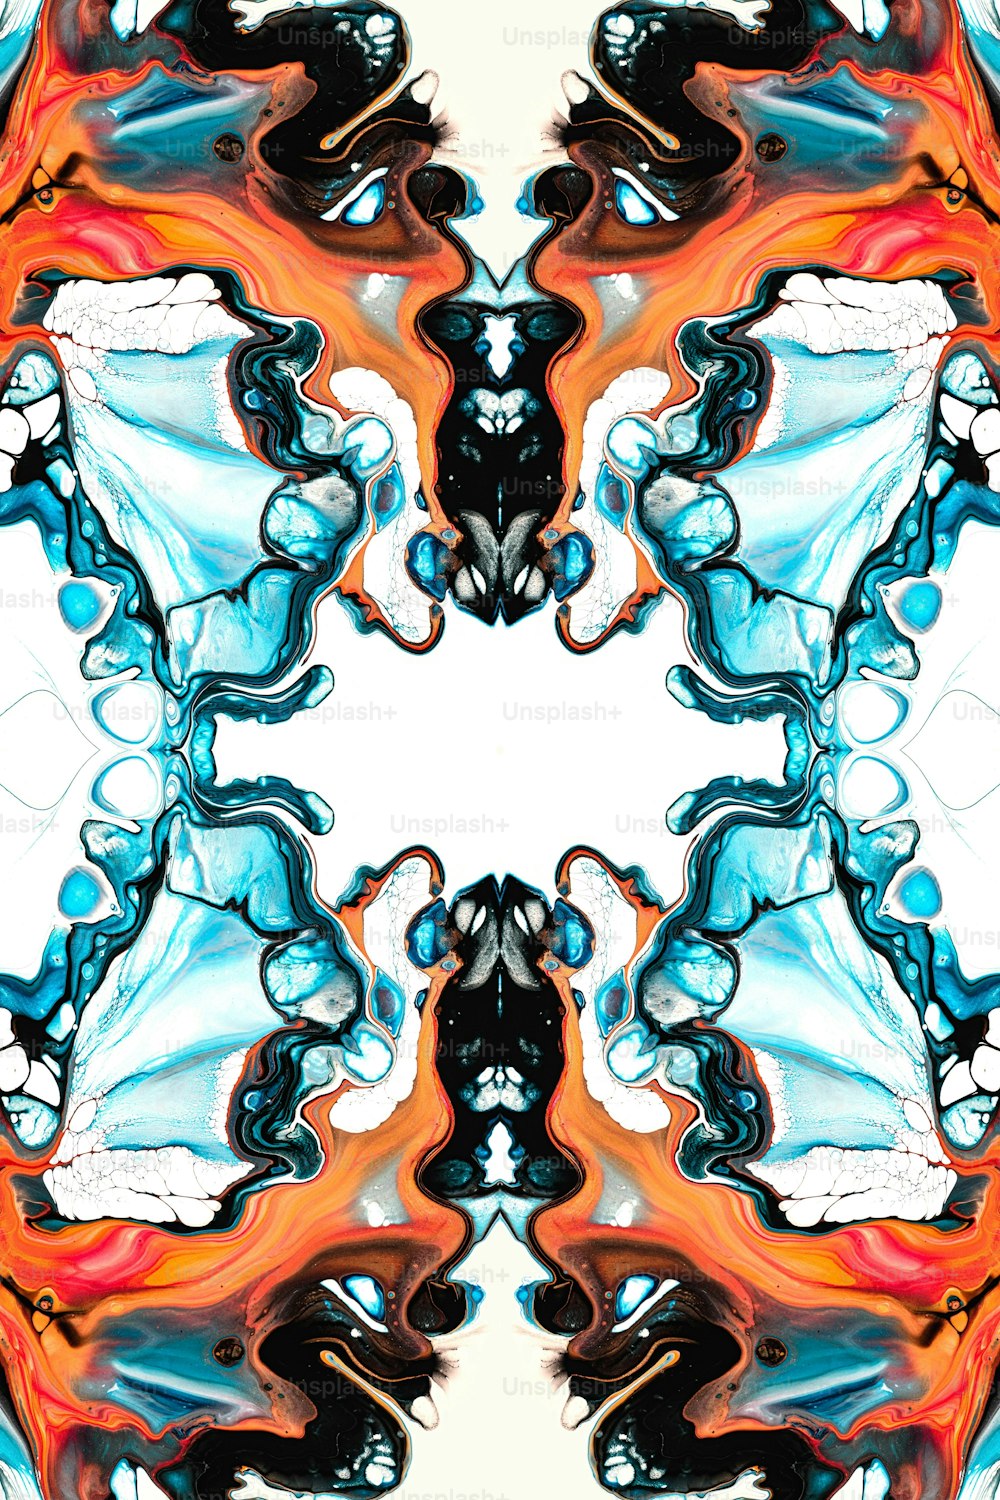 Una imagen de un patrón colorido con un fondo blanco